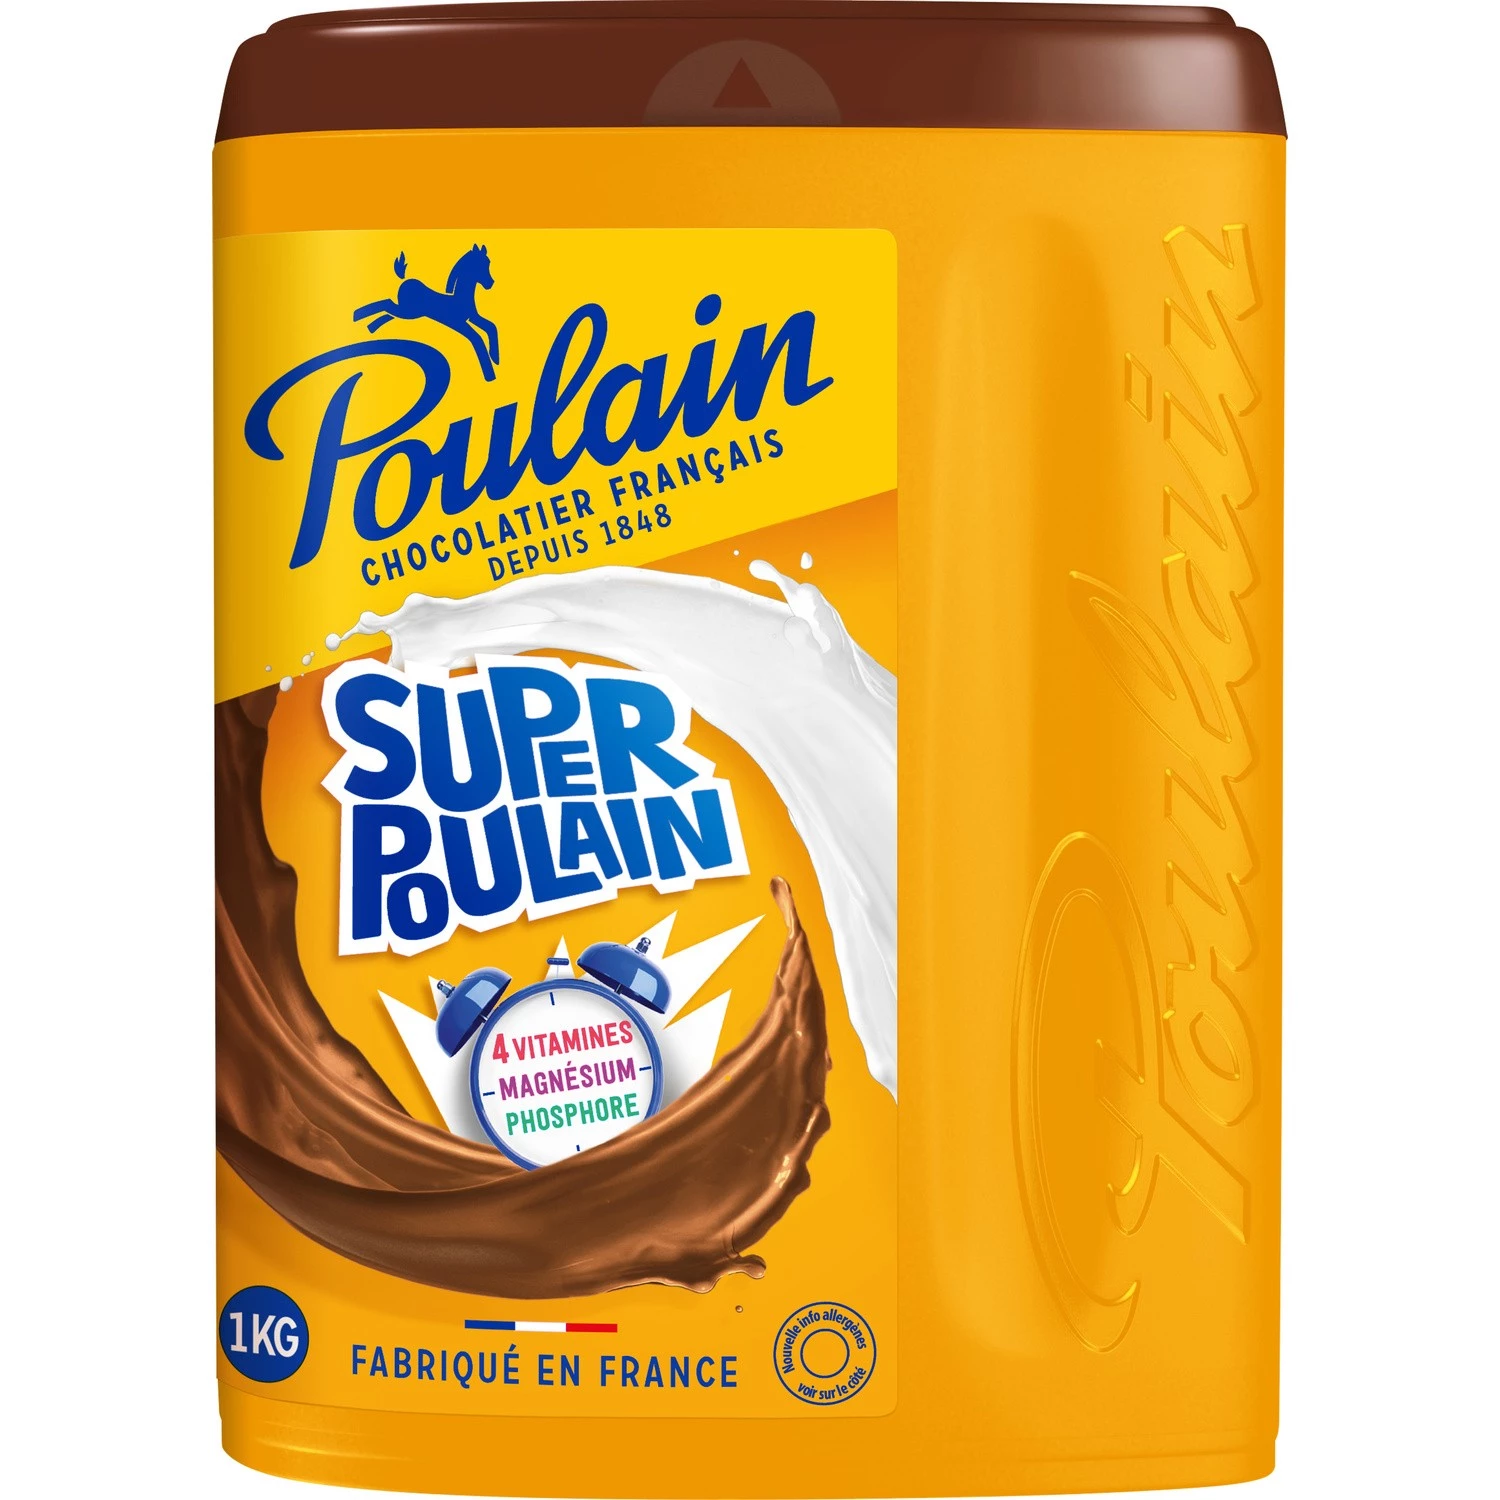 Super Poulain Chocolate Powder 1kg - POULAIN